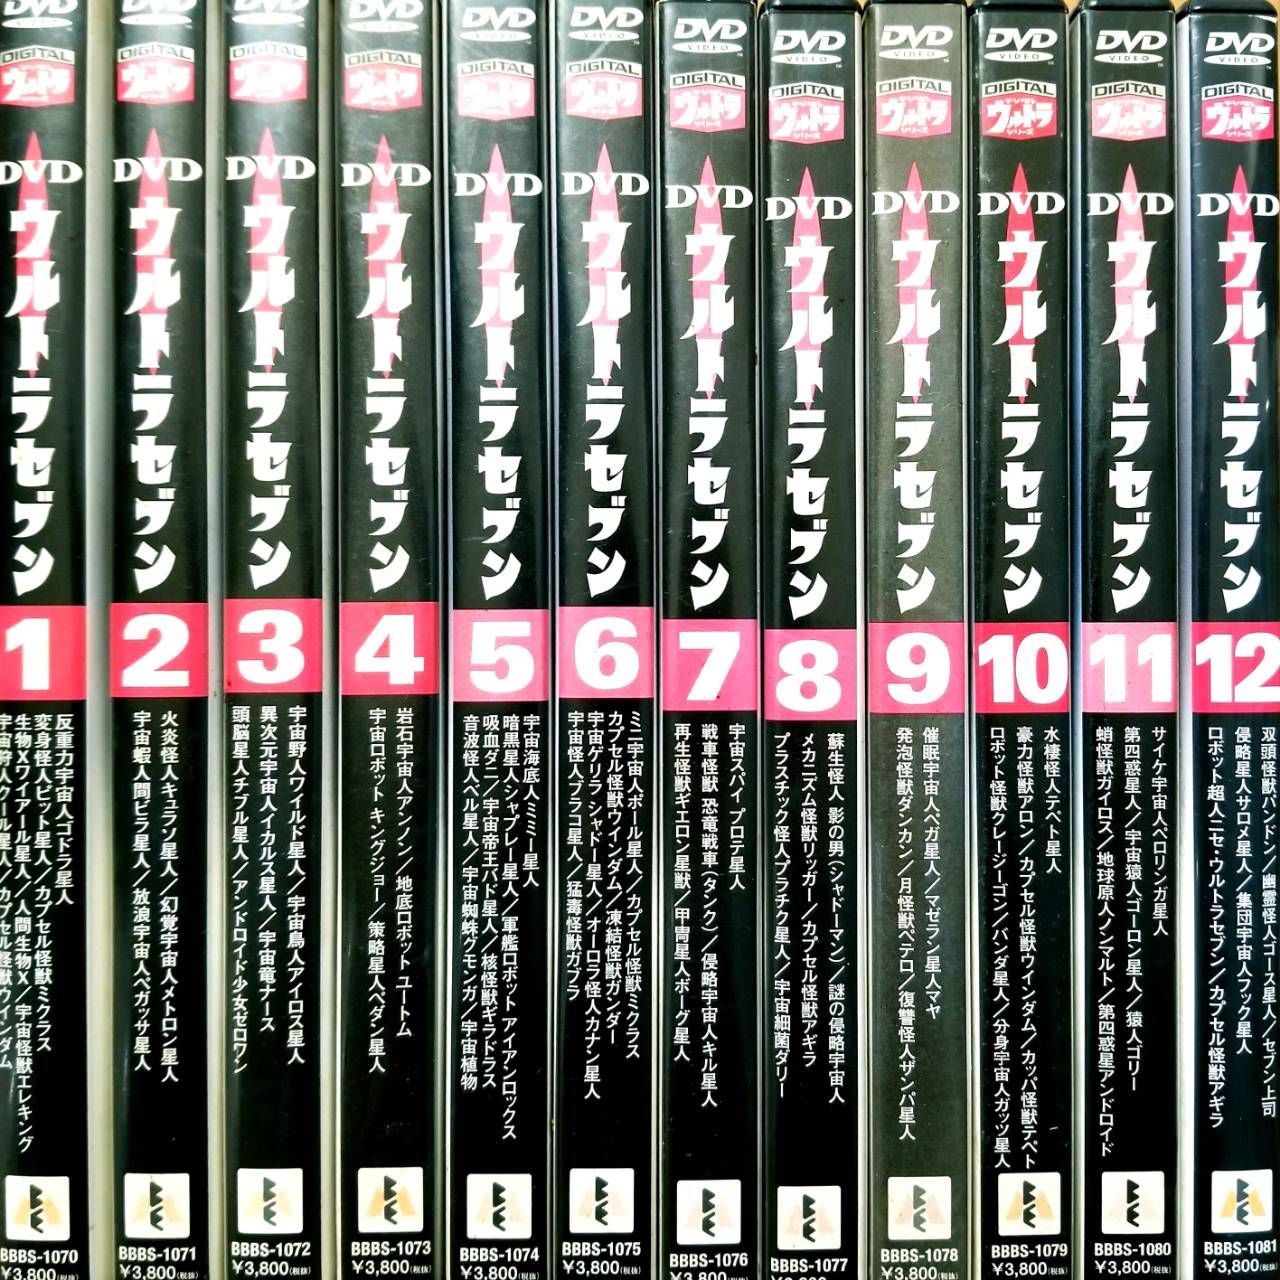 ウルトラセブン 全12巻セット DVD - メルカリ